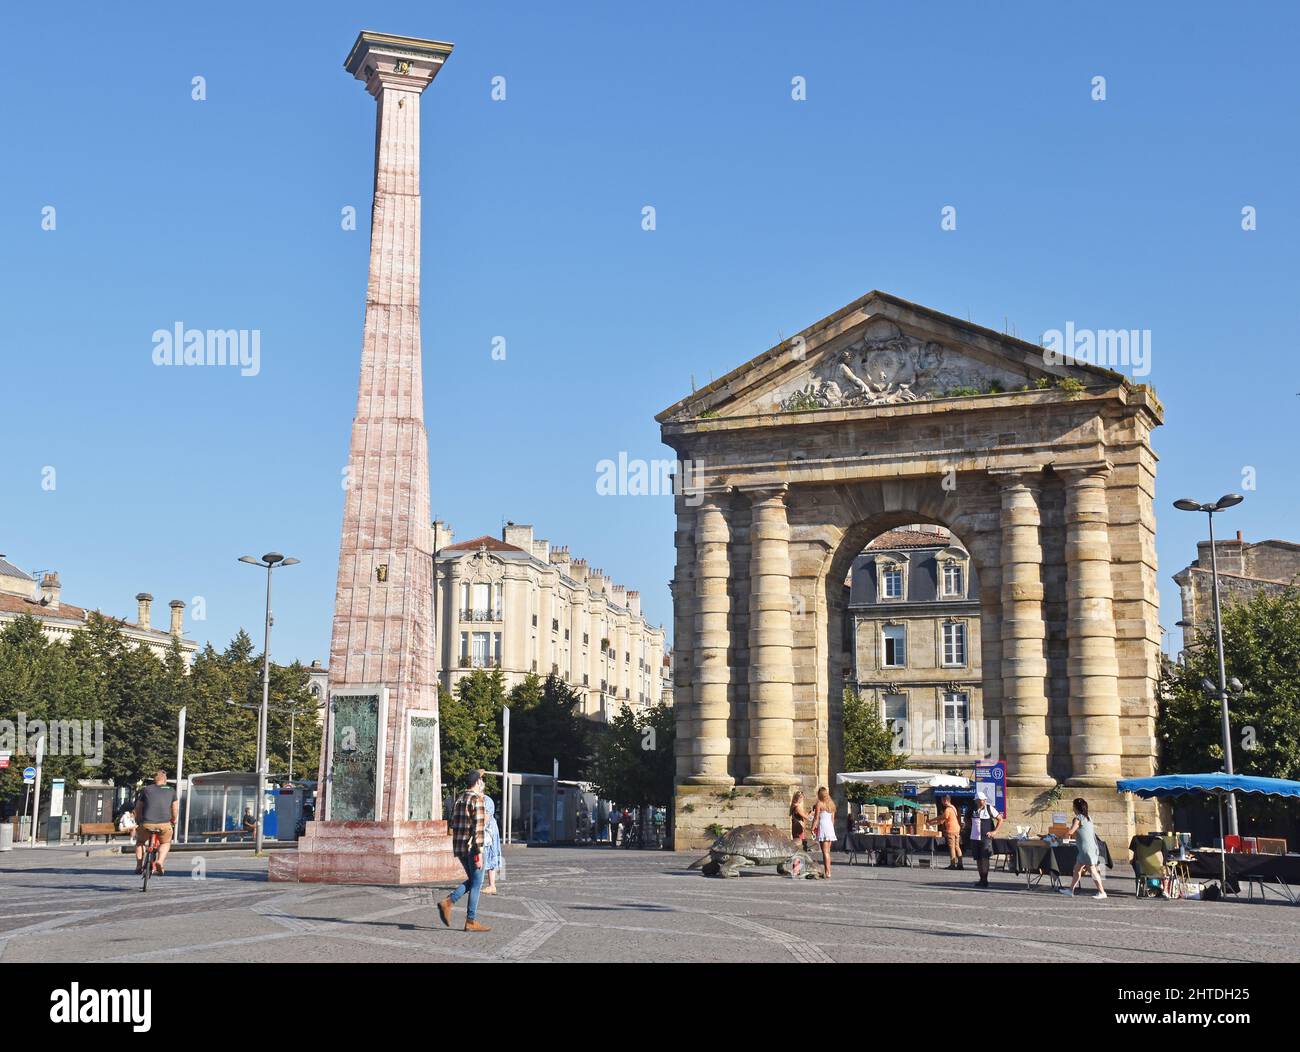 Place de la Victoire in Bordeaux, France, the Porte d’Aquitaine, triumphal arch built 1753, twisted obelisk sculpture, paying homage to vines & wines Stock Photo